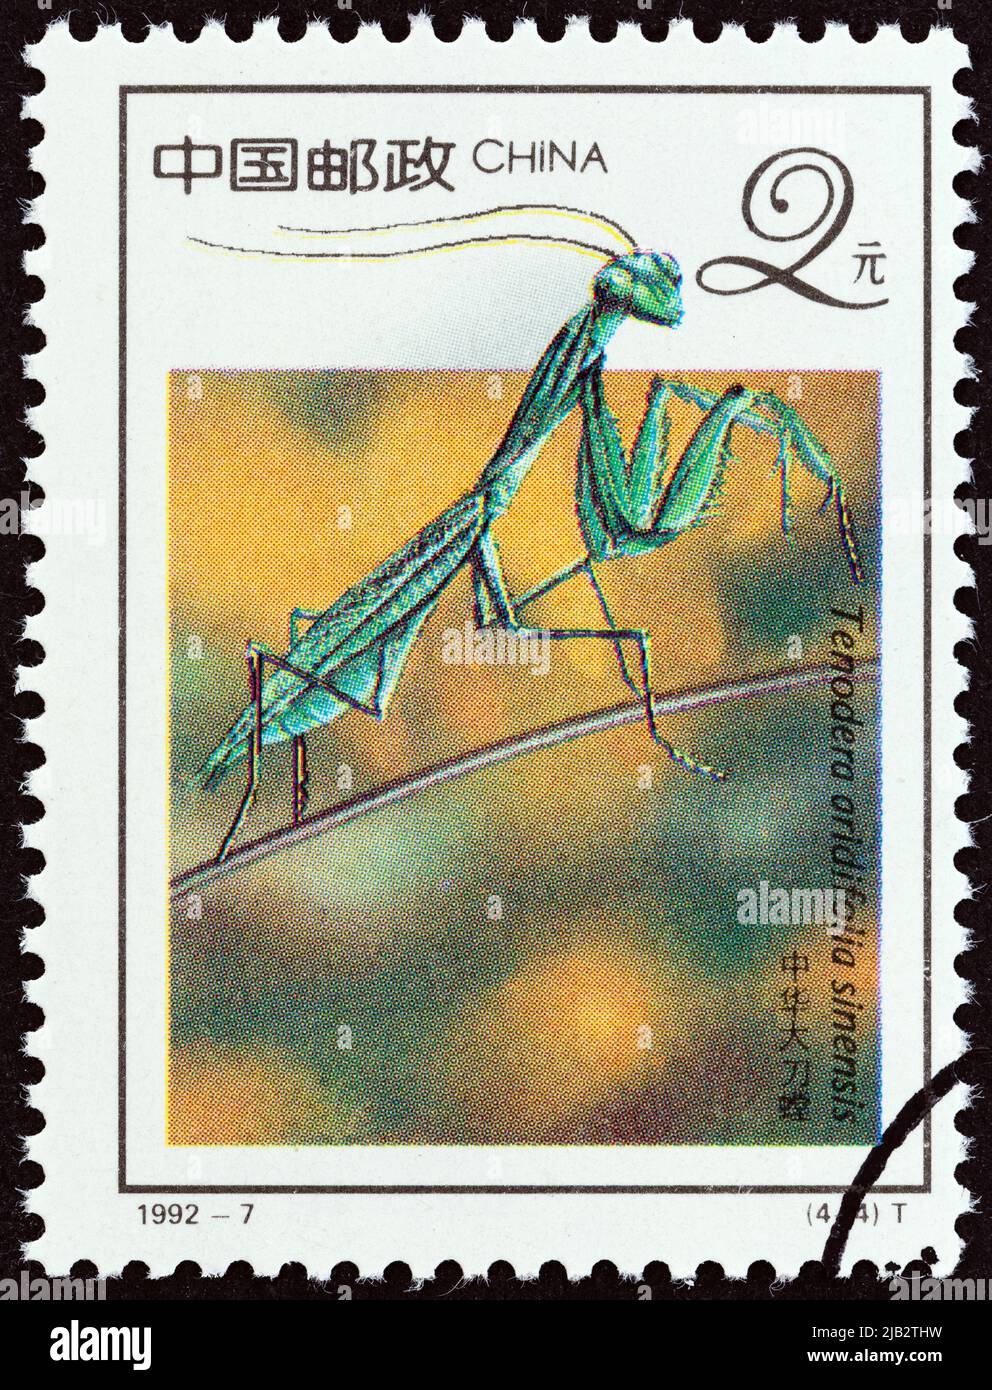 CHINE - VERS 1992 : un timbre imprimé en Chine montre la mante chinoise (Tenodera aridifolia sinensis), vers 1992. Banque D'Images